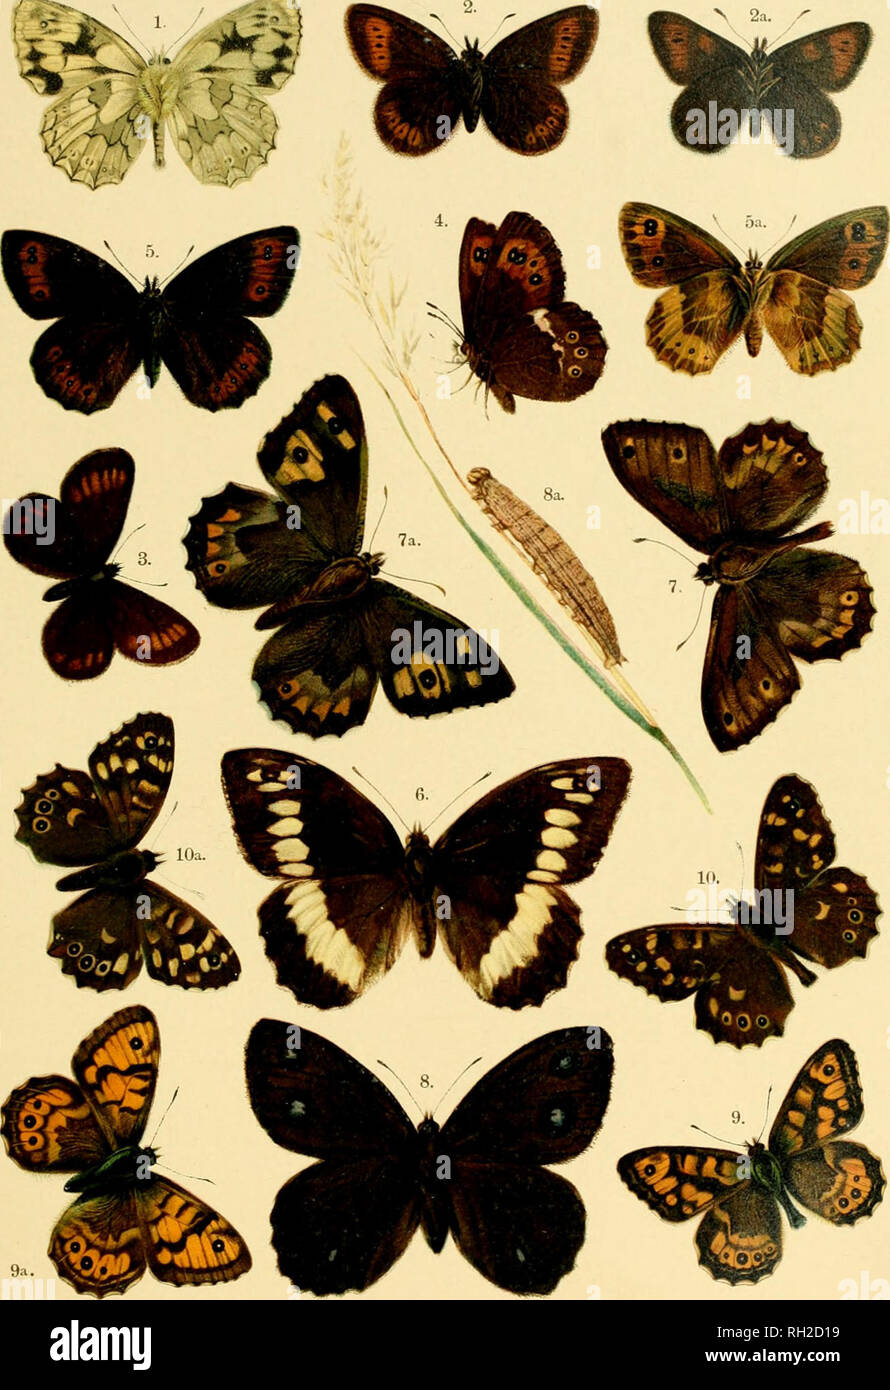 . Europei e britannici di farfalle e falene (Macrolepidoptera). Lepidoptera -- Gran Bretagna; Lepidoptera -- l'Europa. Piastra XL. 1. Melanargia galathea (sotto il lato del maschio). 2. Erebia epiphron, 2a. Sotto lato. 3. Erebia pharte. 4. Erebia ligea (sotto il lato). 5. Erebia aethiops, 5 a. Femmina, sotto lato. 6. Satyrus circe. 7. Satyrus semele, 7a. Femmina. 8. Satyrus dryas, 8a. Larva. 9. Pararge mega;ra, 9a. Femmina. 10. Pararge aegeria, var. asgerides, 10a. Femmina. Europei e britannici di farfalle e falene.. Si prega di notare che queste immagini vengono estratte dalla pagina sottoposta a scansione di immagini che possono essere state cifra Foto Stock